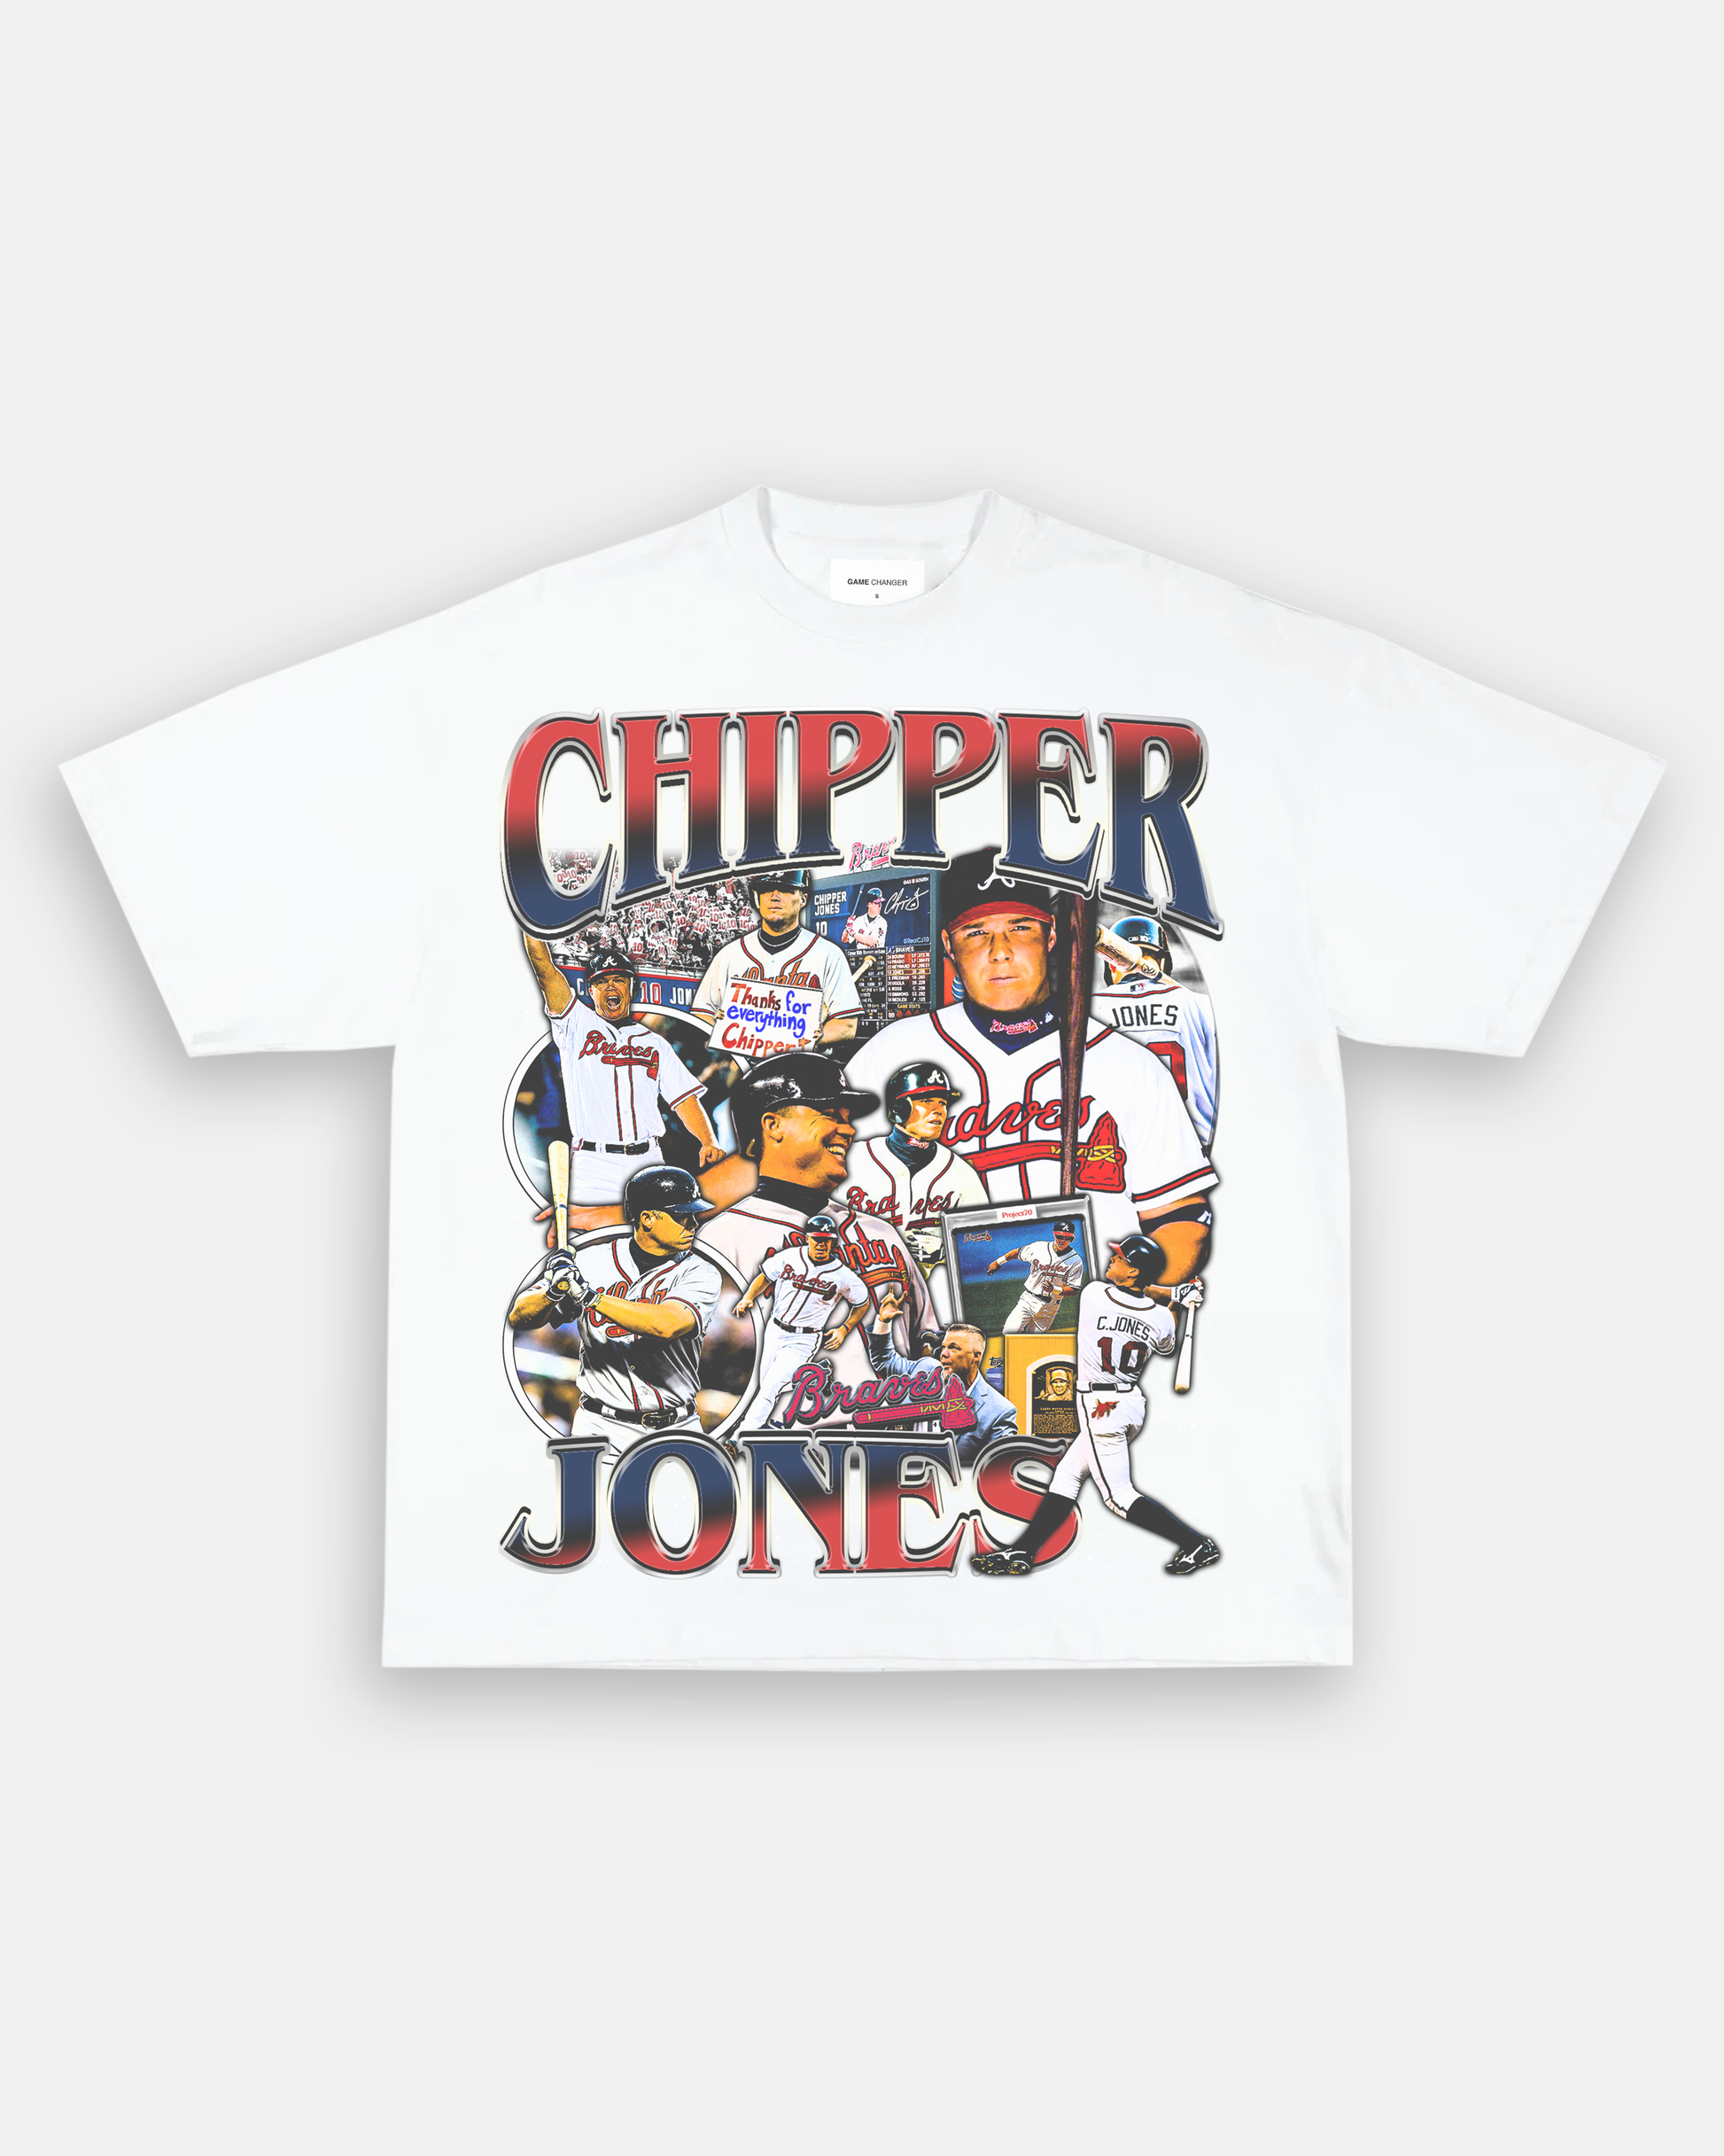 chipper jones merchandise